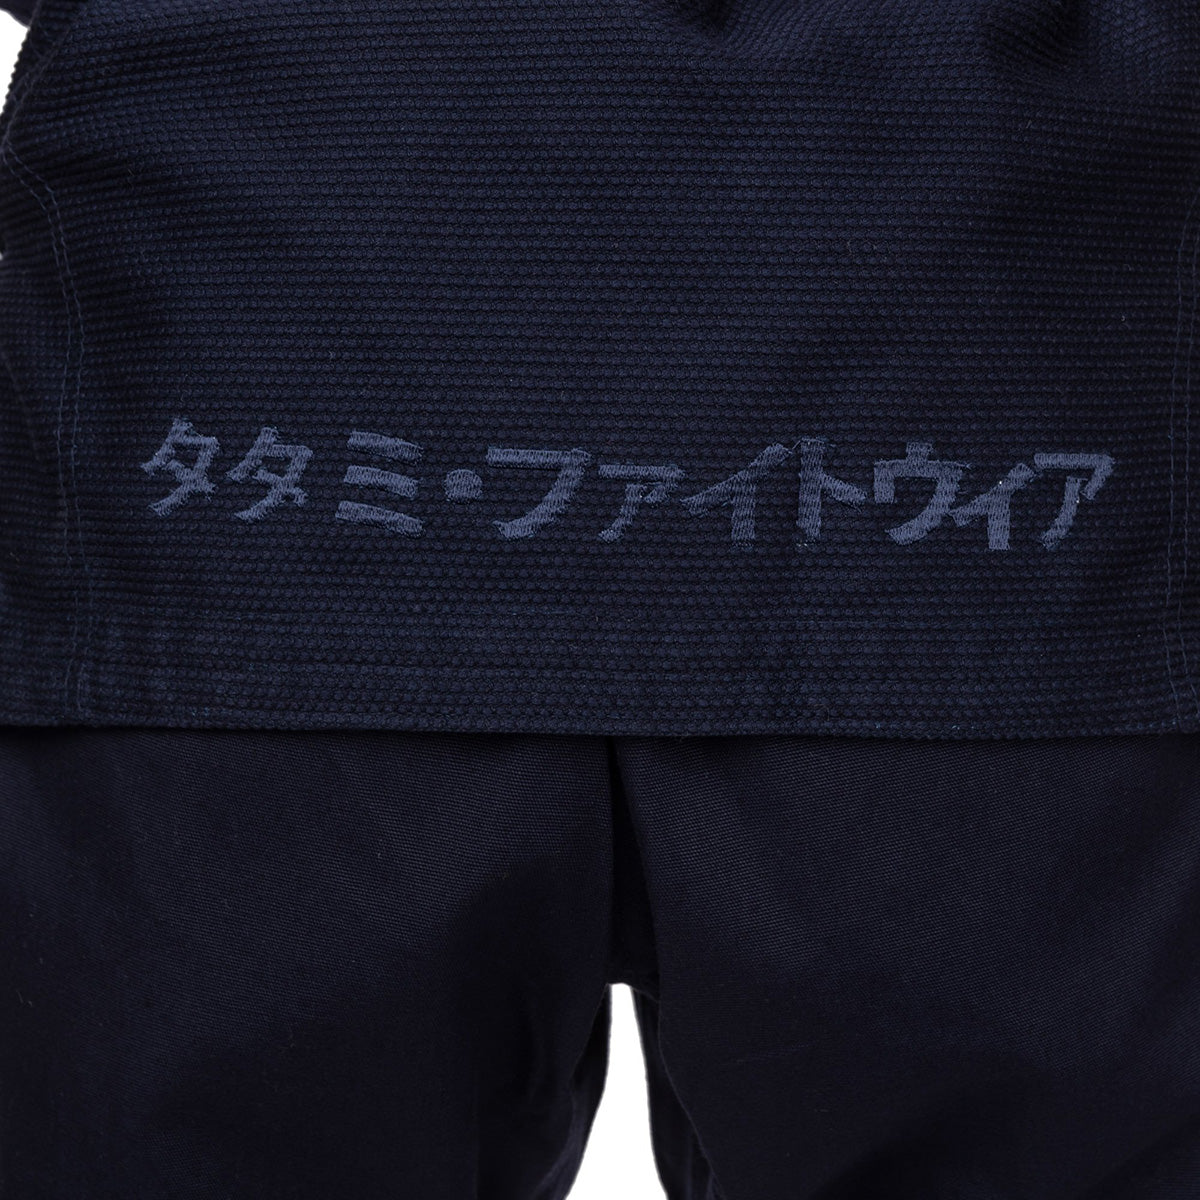 Tatami Fightwear Women's Estilo Black Label BJJ Gi - Gold/Navy Tatami Fightwear